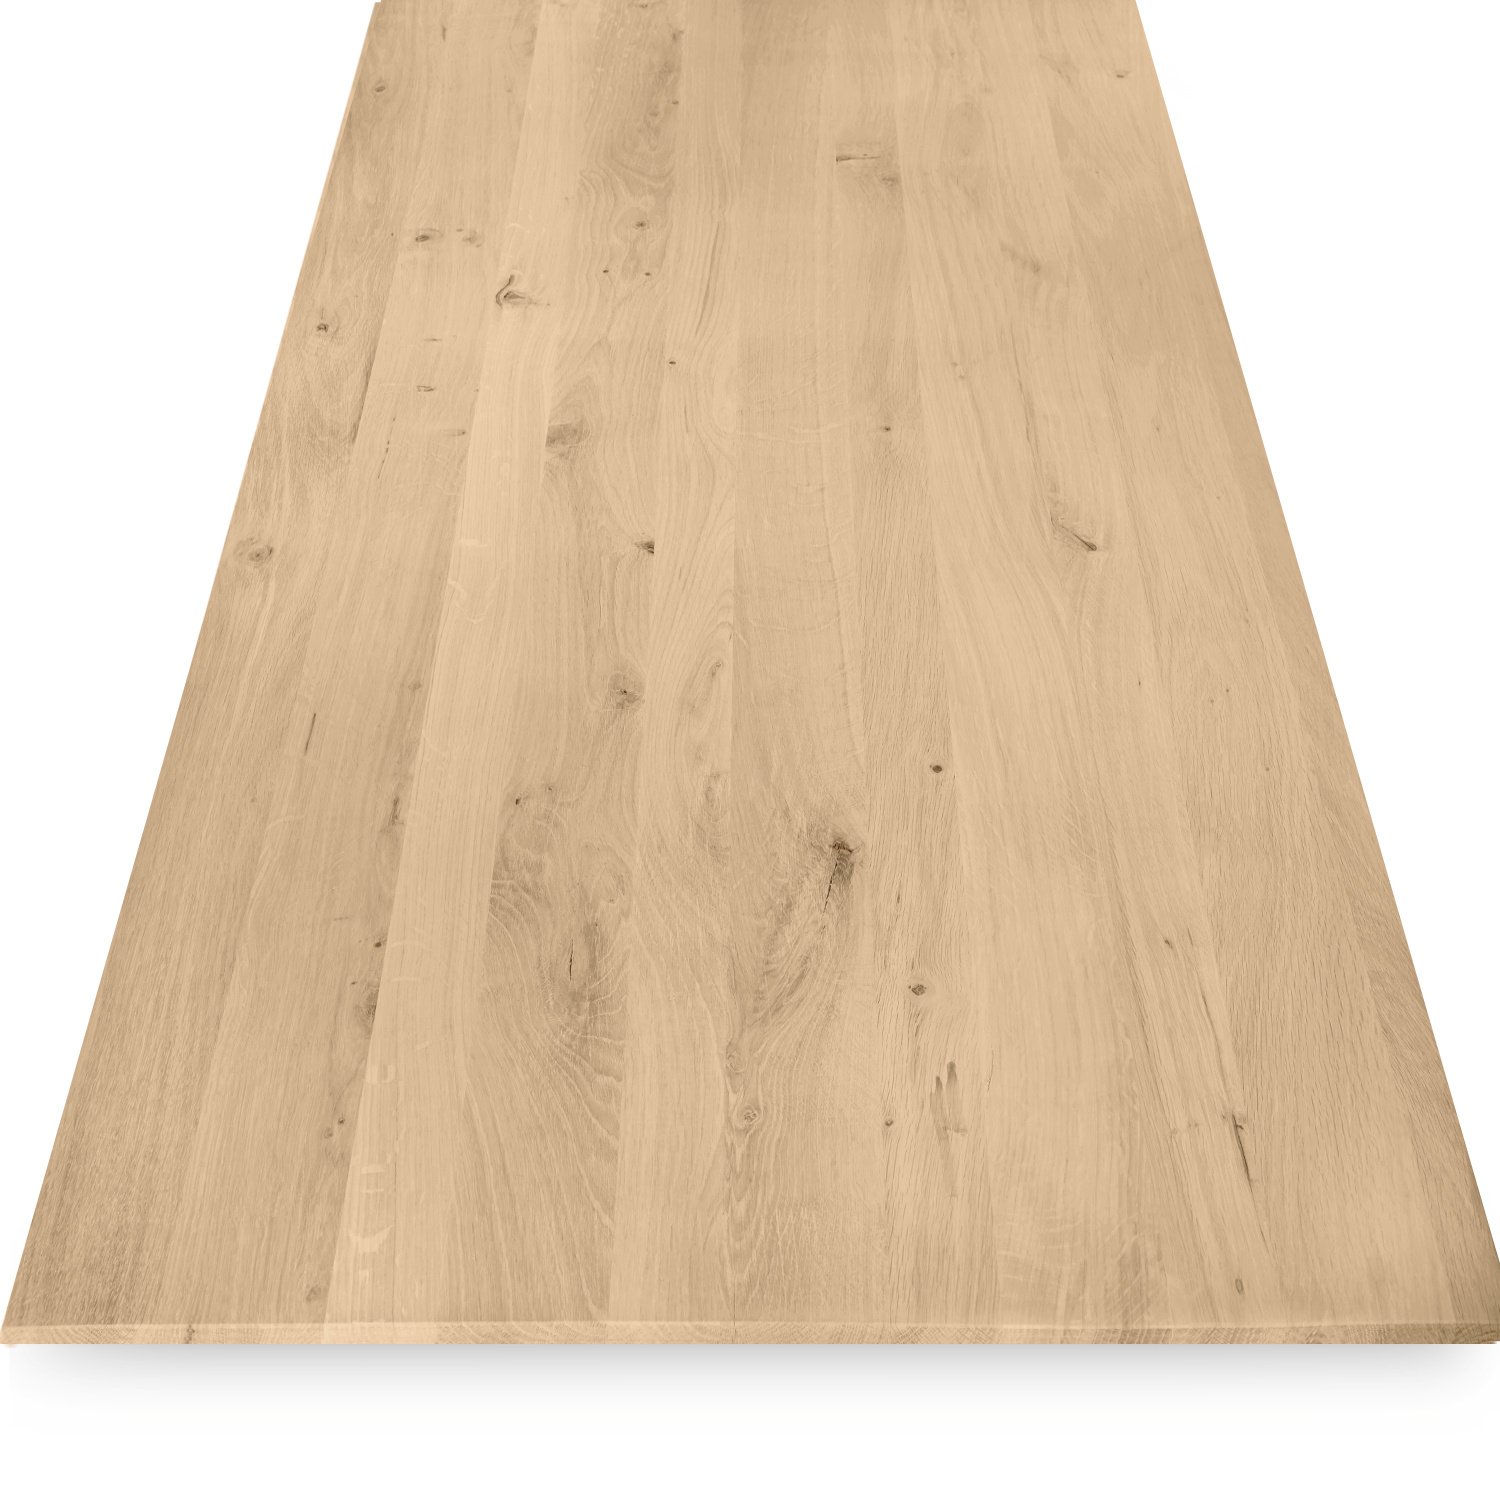  Tischplatte Eiche - Schweizer Kante - nach Maß - 4 cm dick - Eichenholz rustikal - Eiche Tischplatte massiv - verleimt & künstlich getrocknet (HF 8-12%) - 50-120x50-350 cm